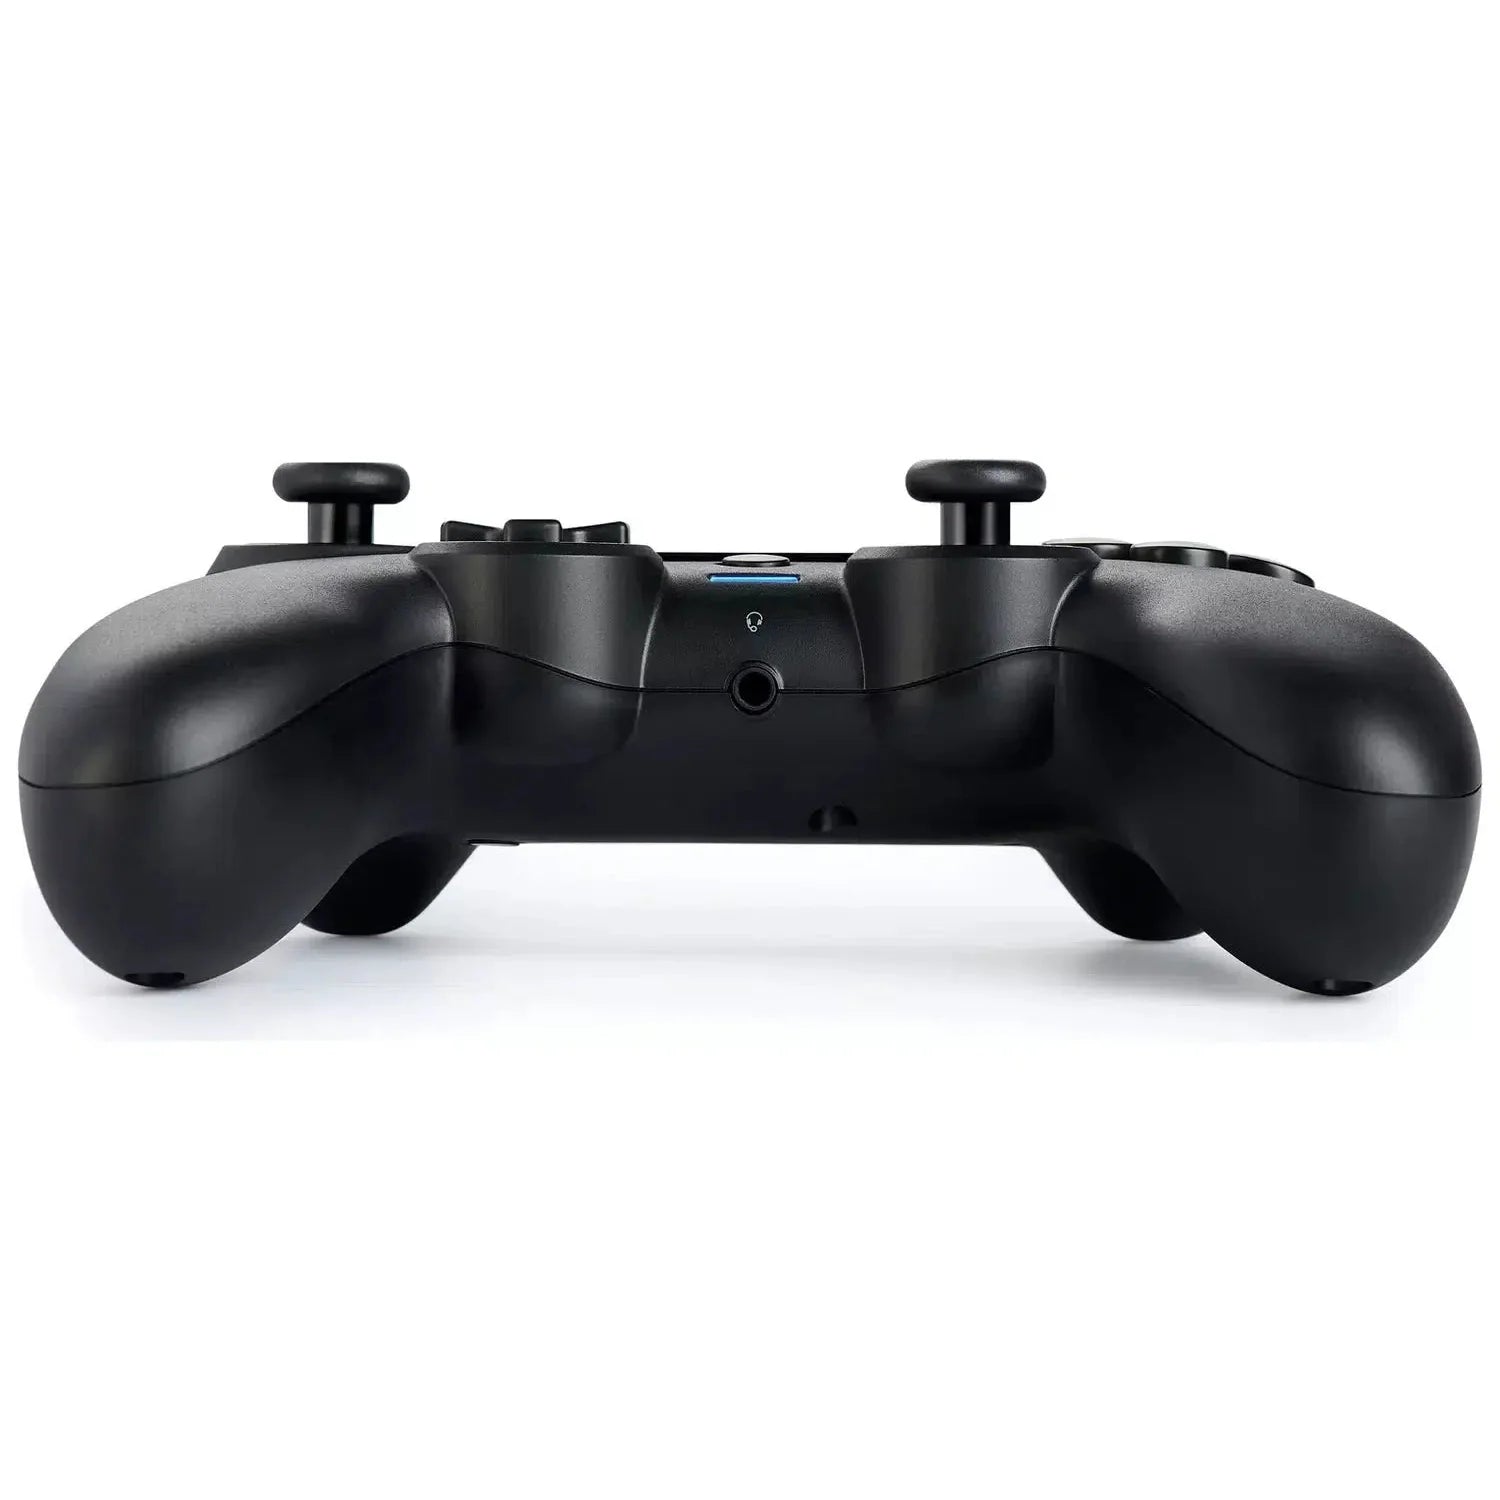 Nacon Asymmetric Official PS4 Wireless Controller - Black - New